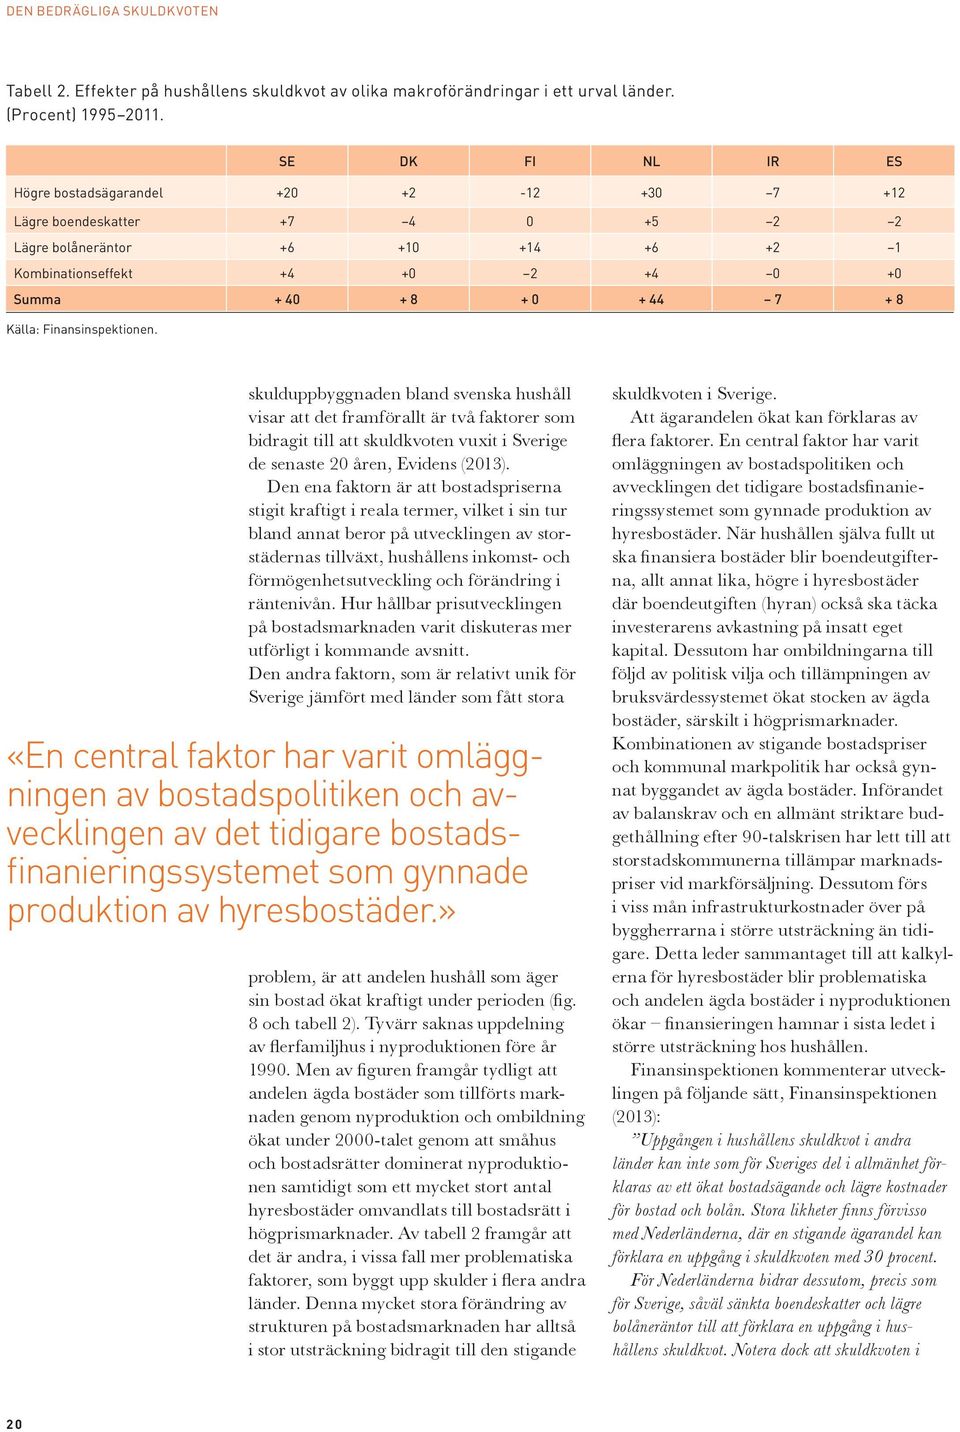 Källa: Finansinspektionen. skulduppbyggnaden bland svenska hushåll visar att det framförallt är två faktorer som bidragit till att skuldkvoten vuxit i Sverige de senaste 20 åren, Evidens (2013).